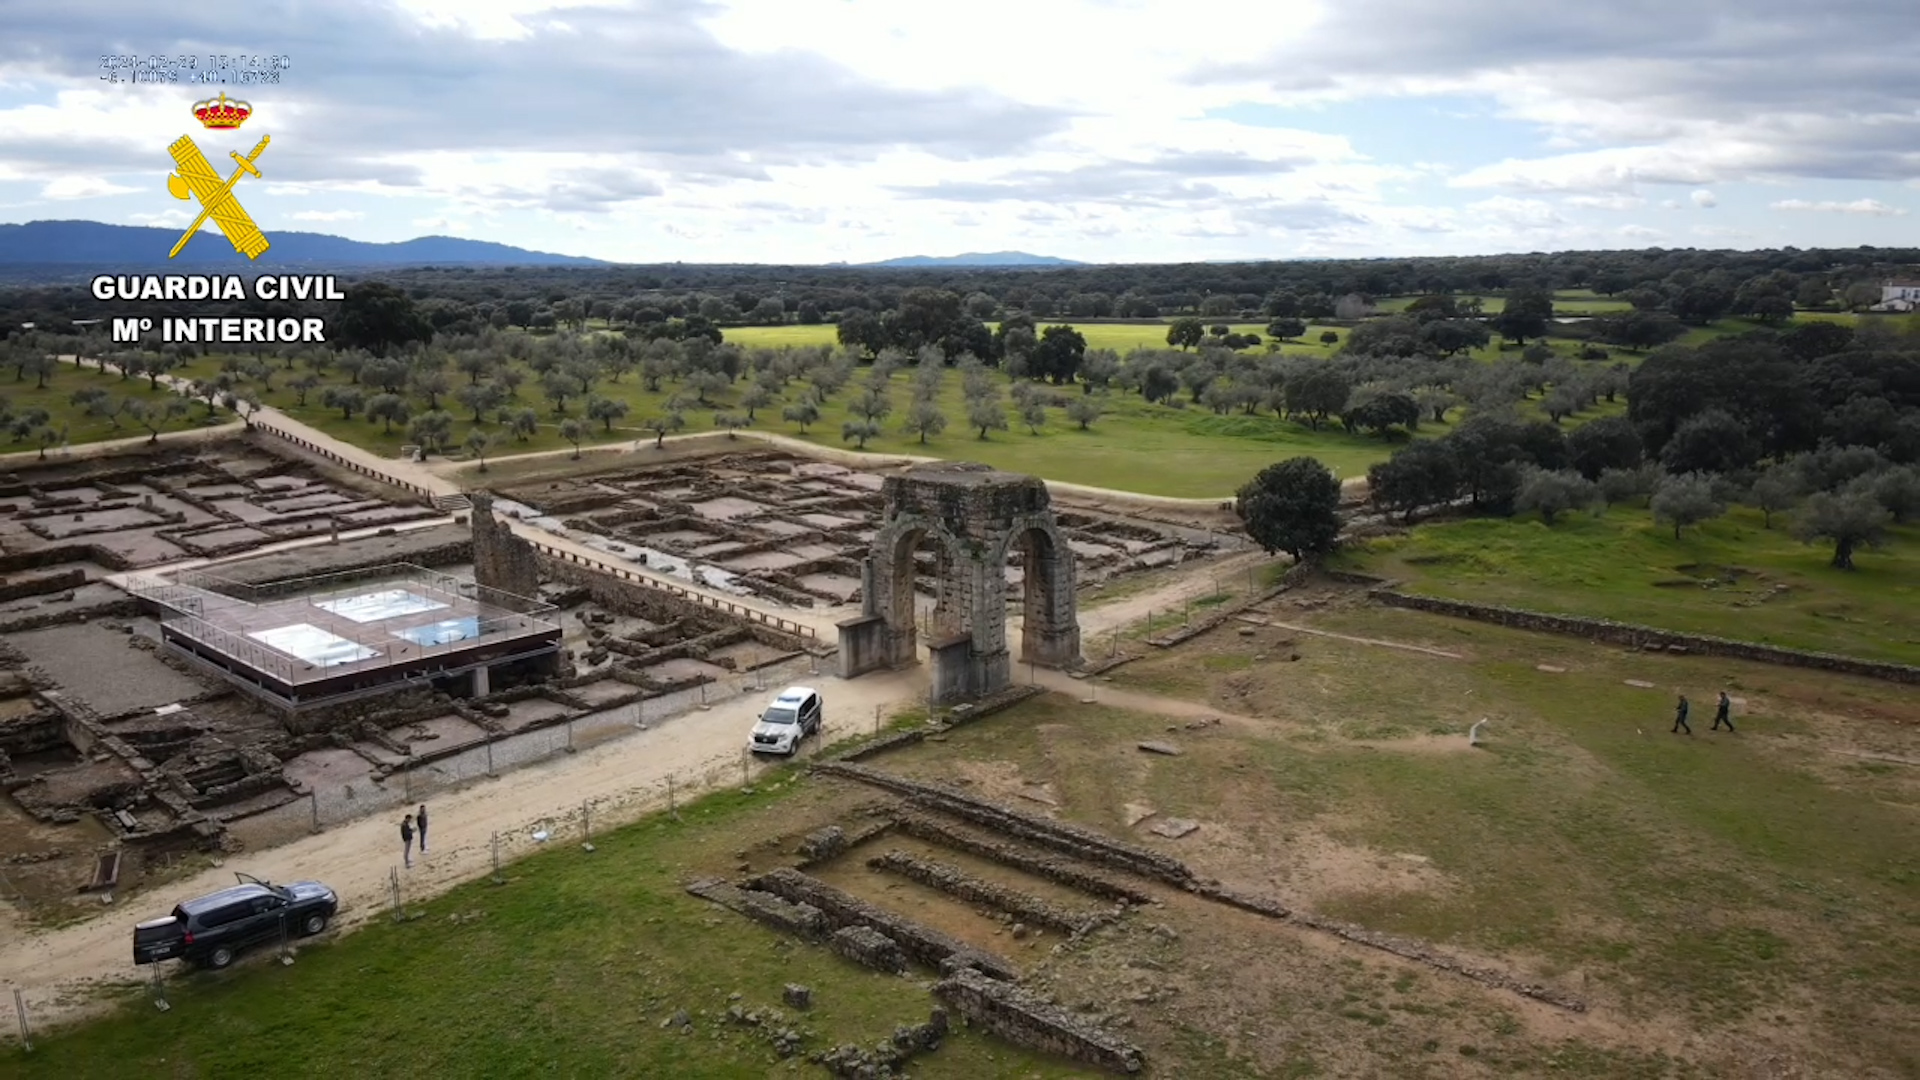 Recuperadas 2.500 piezas arqueológicas del siglo I a.C. de un expolio en un yacimientos en la provincia de Cáceres